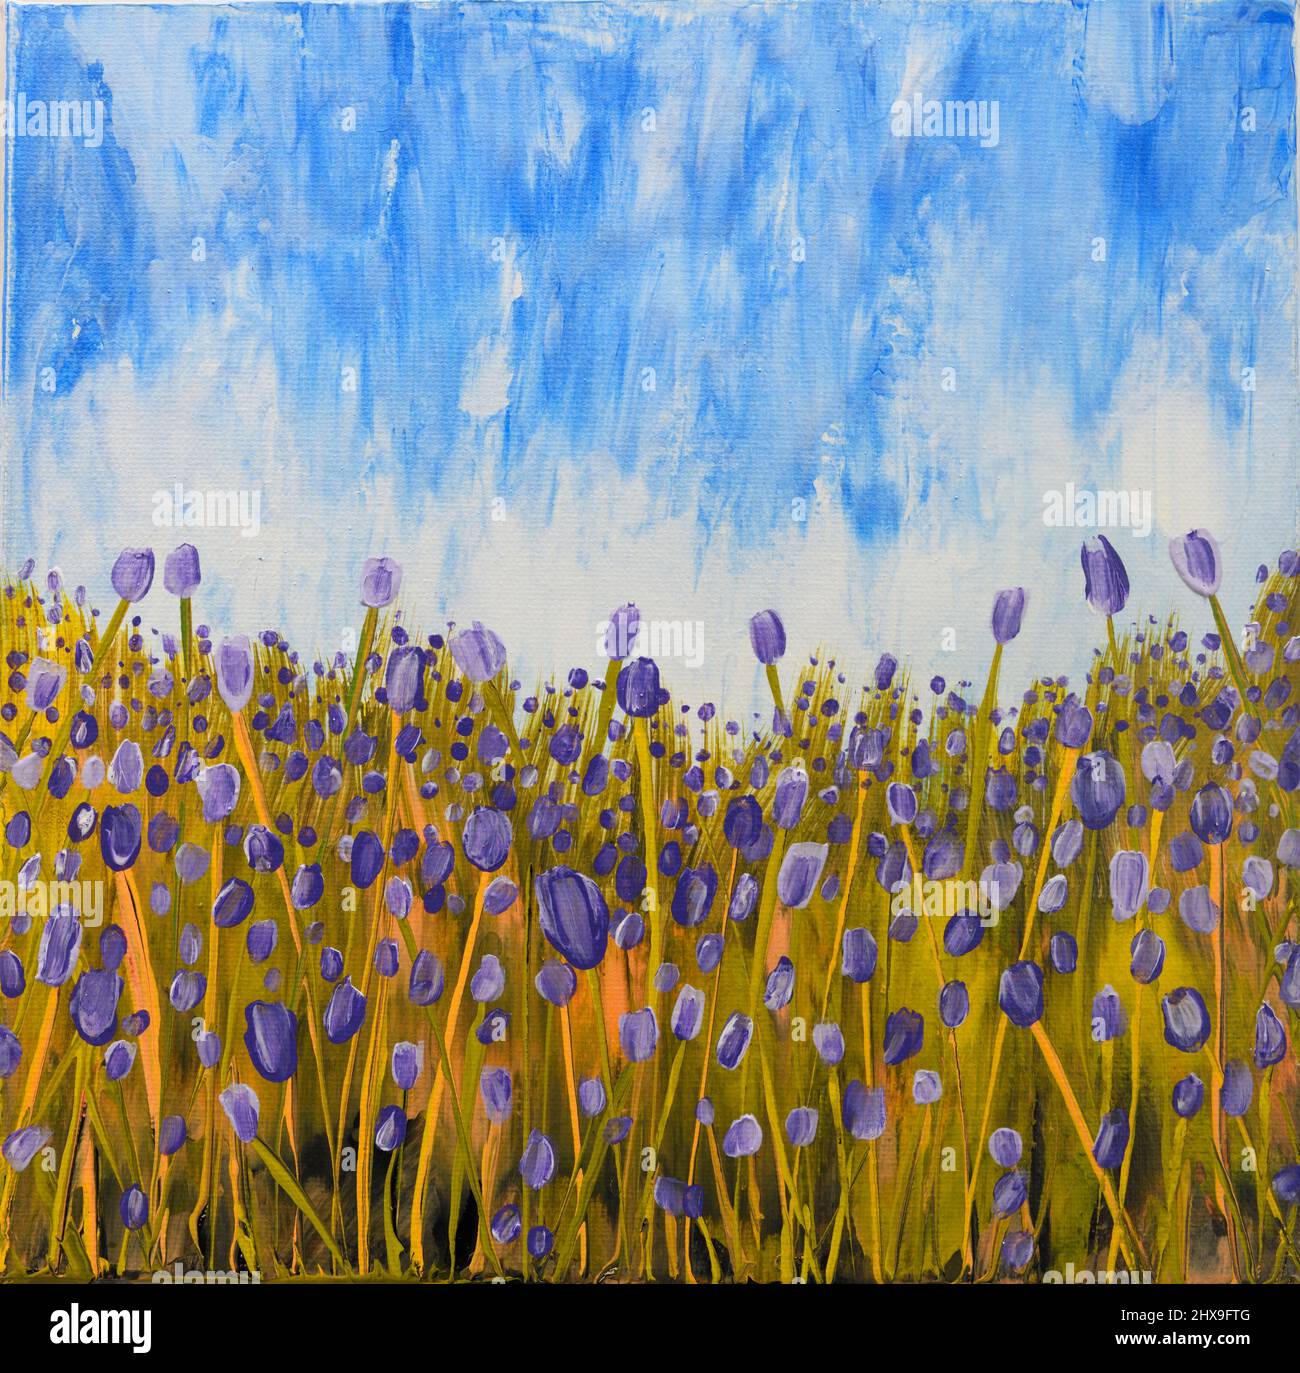 Abstrait peinture acrylique impressionniste de champ de fleurs violettes avec ciel bleu Banque D'Images